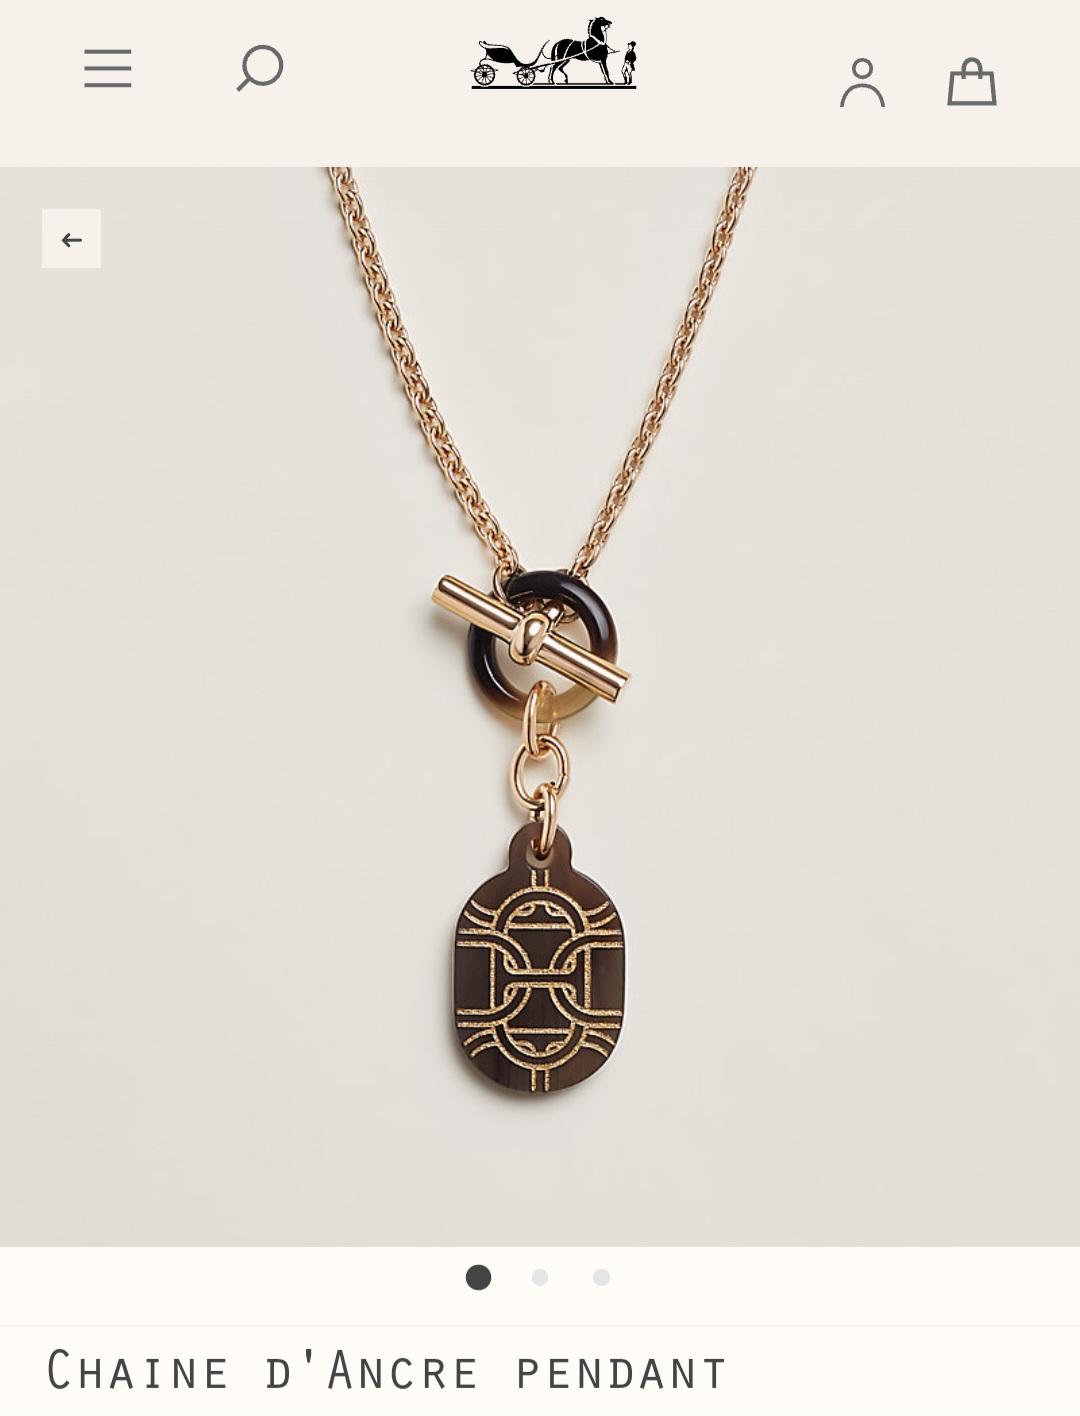 Hermes Chaine d’Ancre pendant necklace